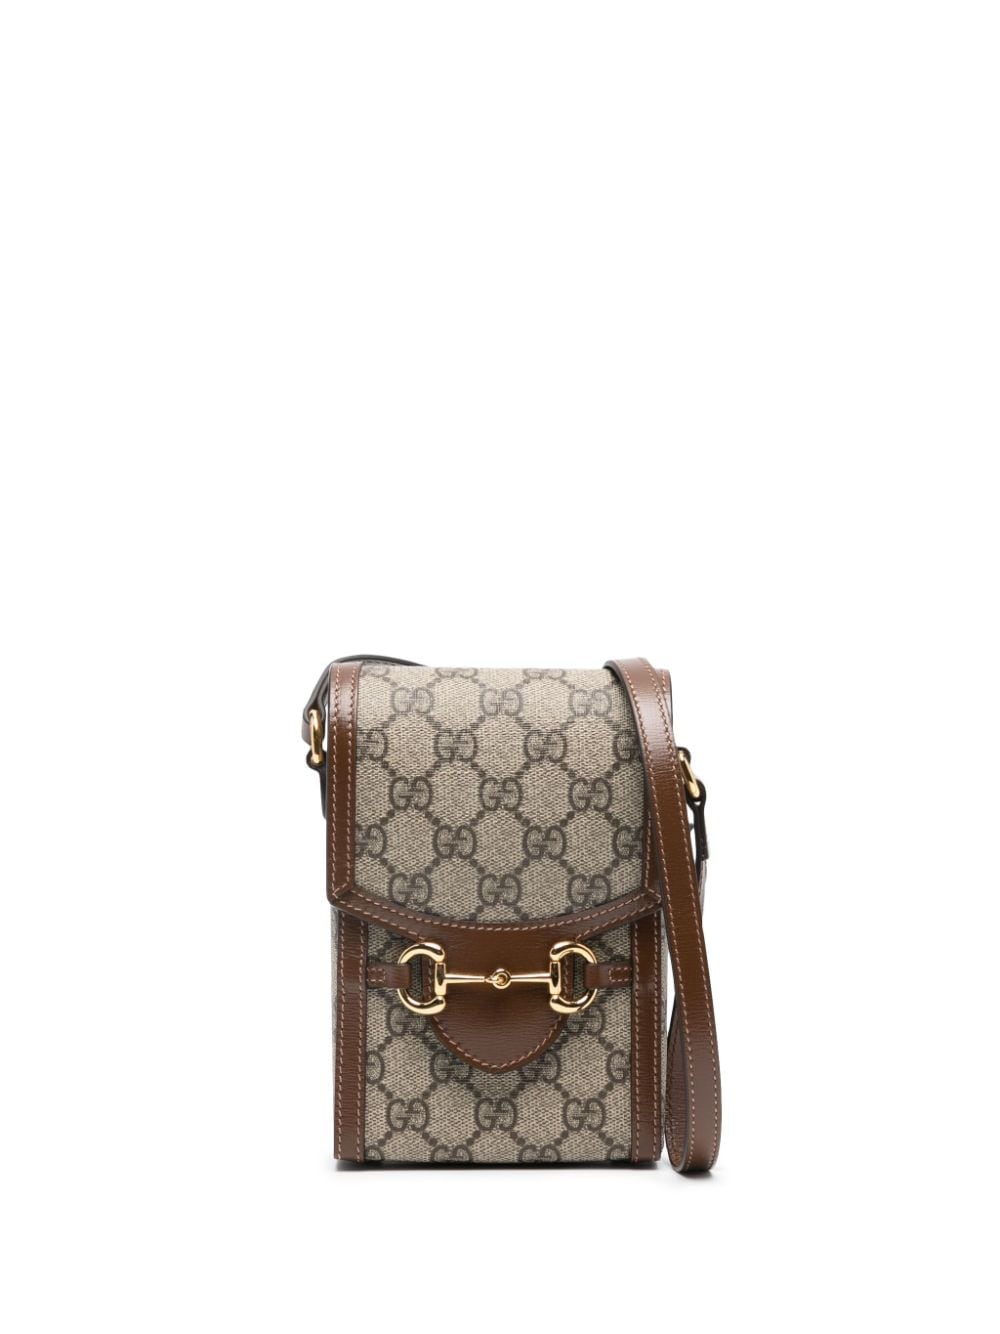 Image 1 of Gucci mini sac porté épaule Horsebit 1955